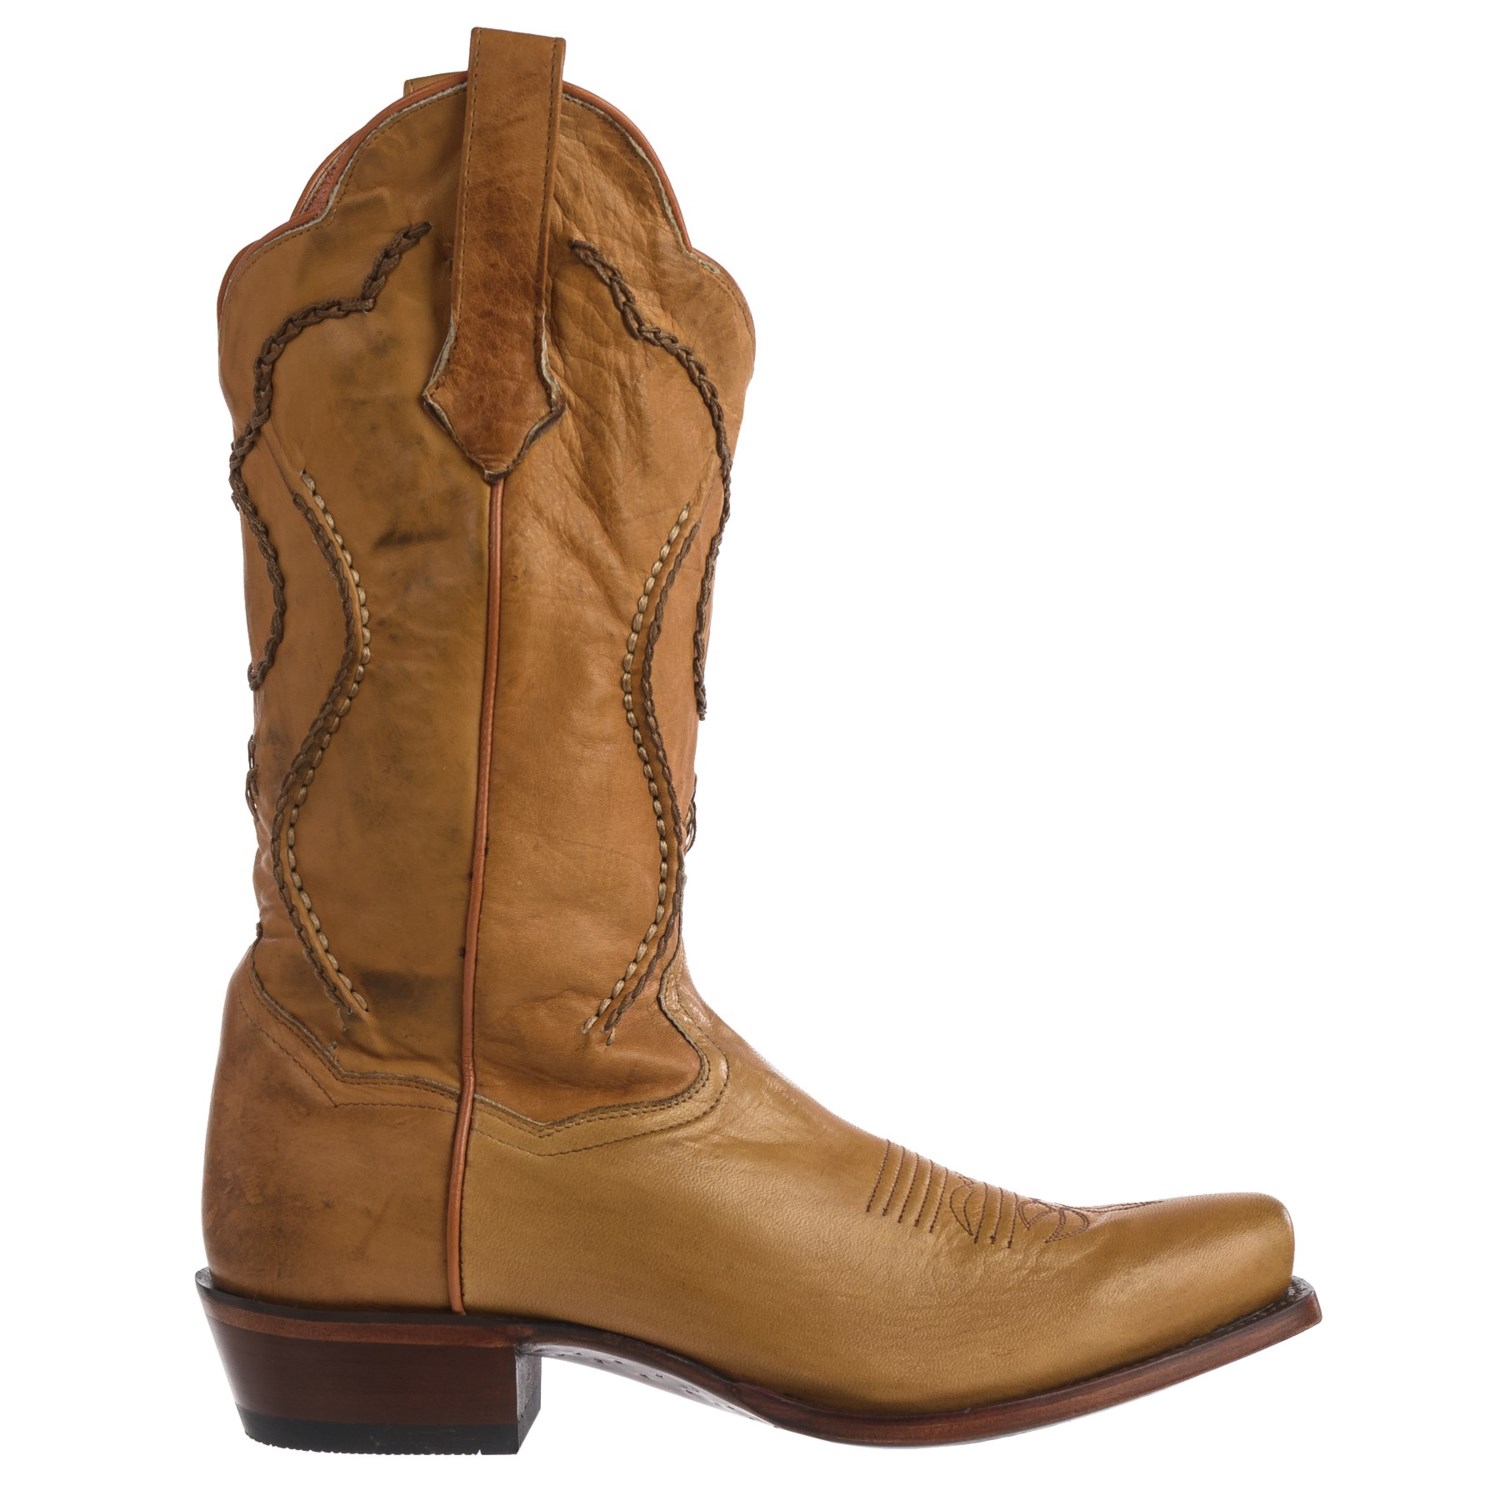 Dan Post Albany Palomino Cowboy Boots (For Men) - Save 68%